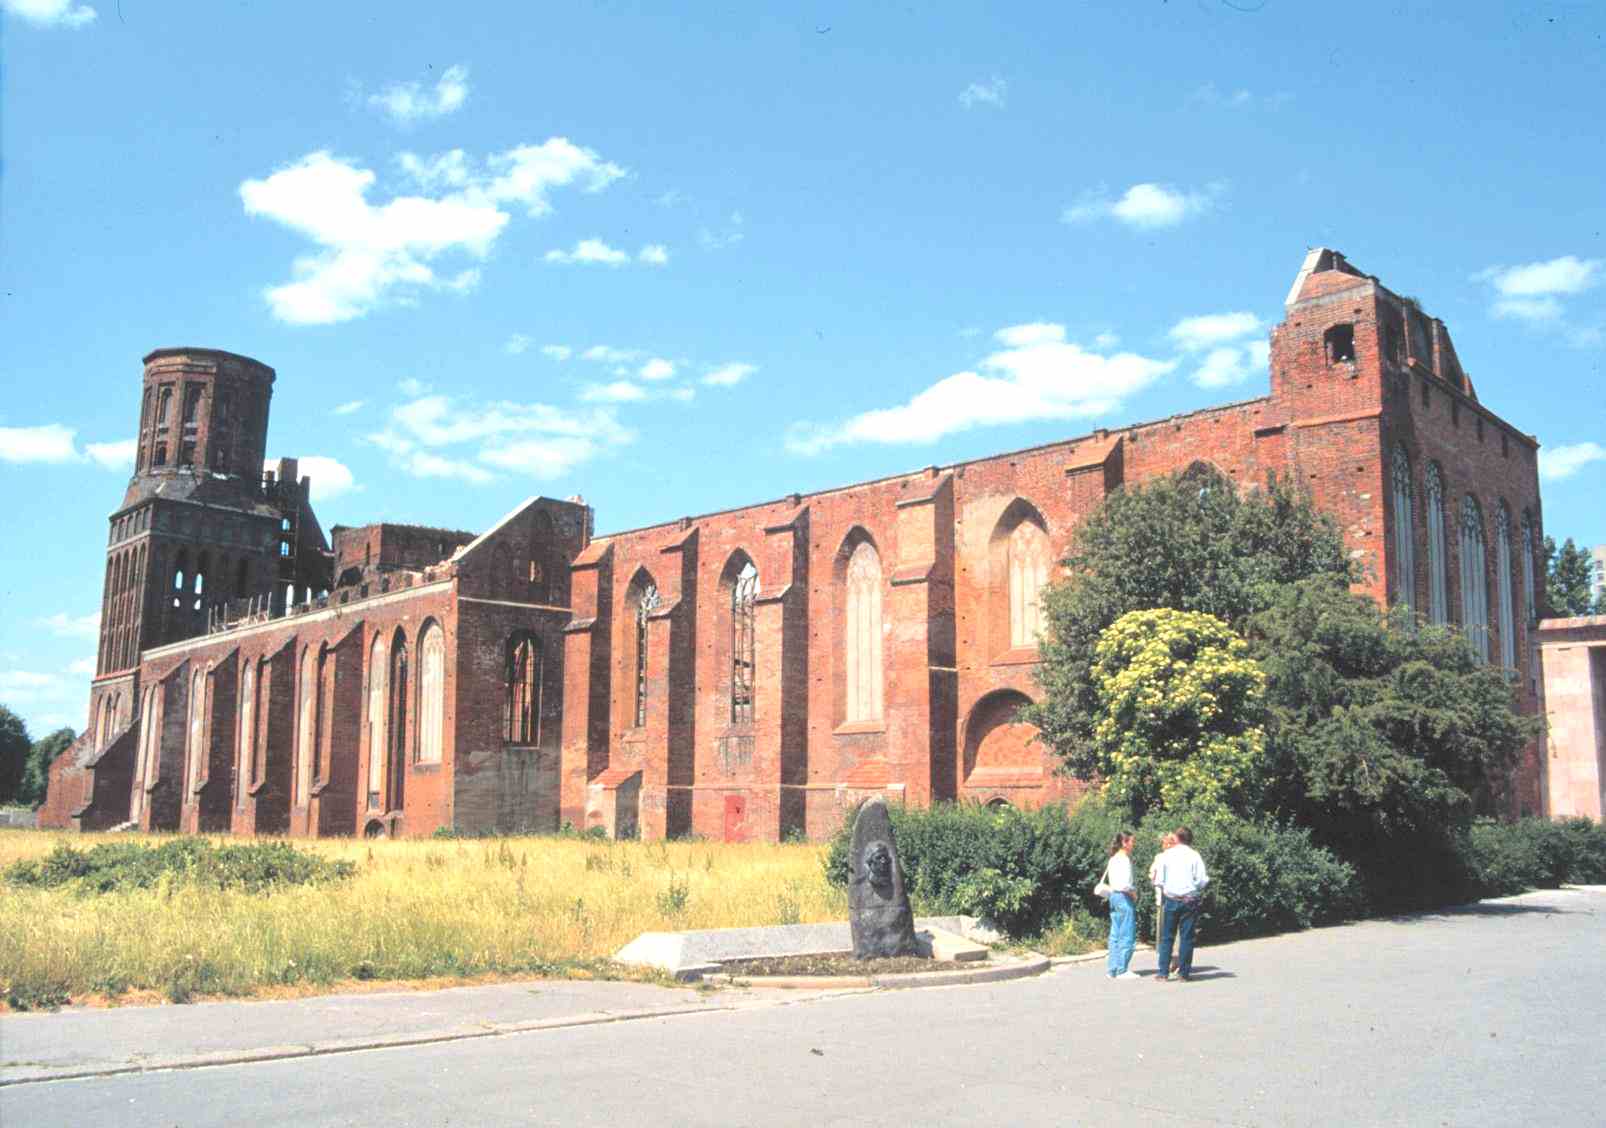 Königsbergin tuomiokirkko tuhoutui pahoin brittien pommituksissa toisen maailmansodan aikana. Kuva vuodelta 1992.